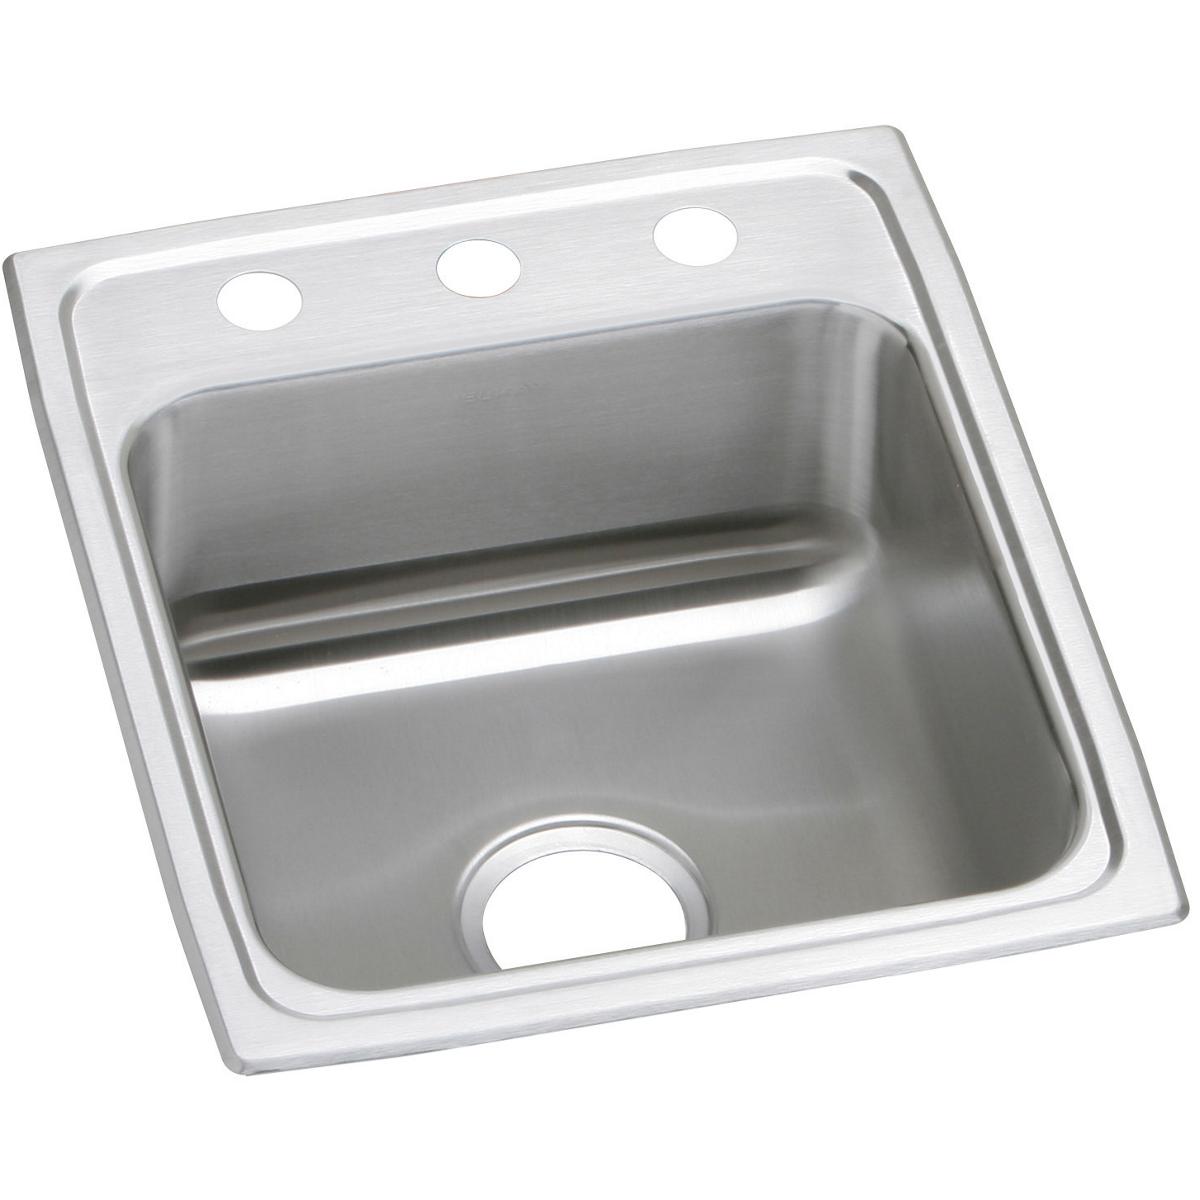 Elkay Celebrity Stainless Steel 17" x 20" x 7-1/8" Single Bowl Drop-in Sink